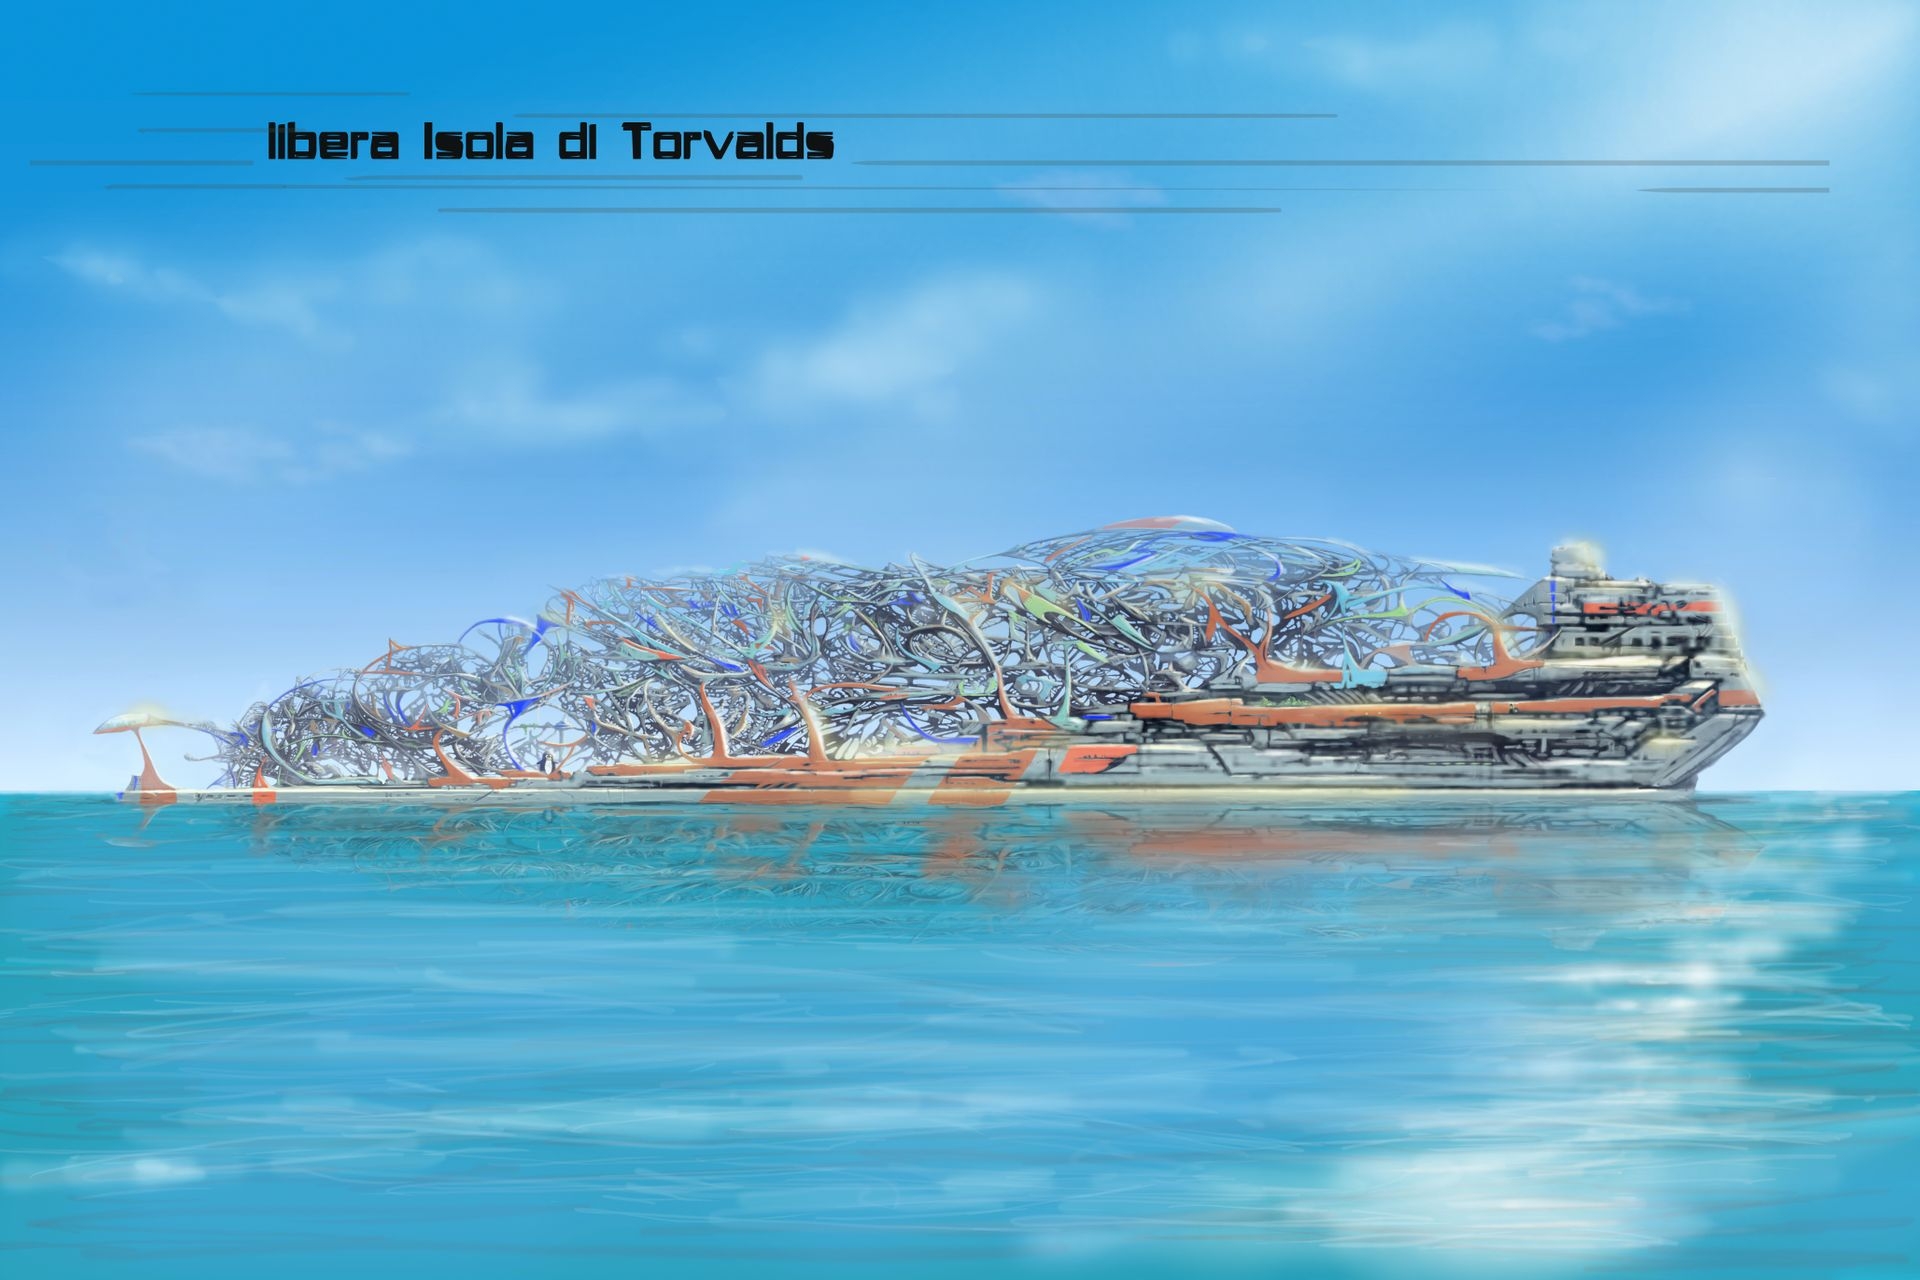 Inovativna književnost: ilustracija slobodnog otoka Torvaldsa u "Projektu Montecristo - Prva kolonija" Edoarda Volpija Kellermanna